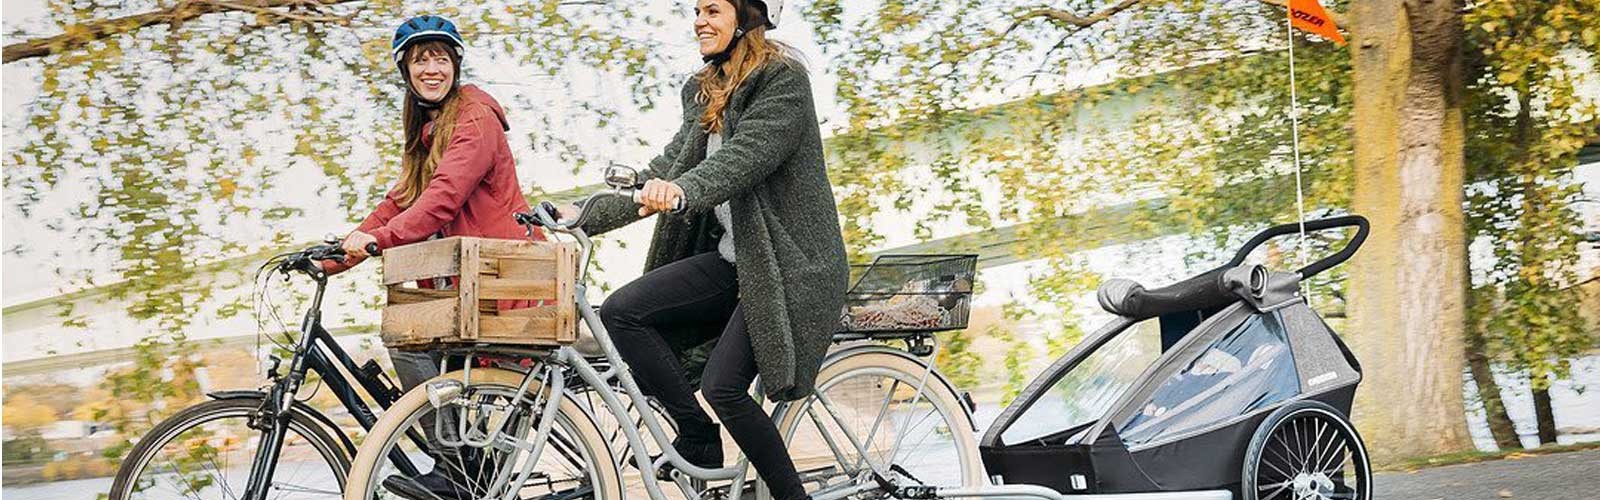 Croozer Vaaya 2 : remorque vélo enfant 2 places grand confort et sécurité